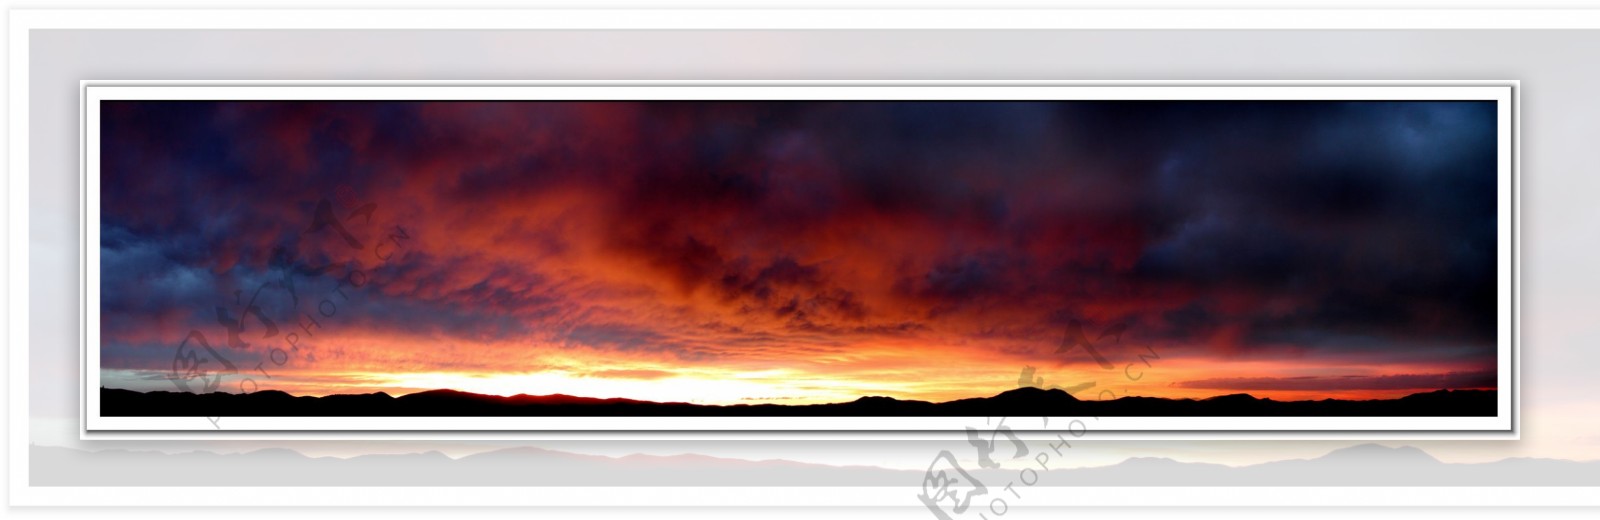 夕阳彩霞全景图风景3d设计贴图环境素材